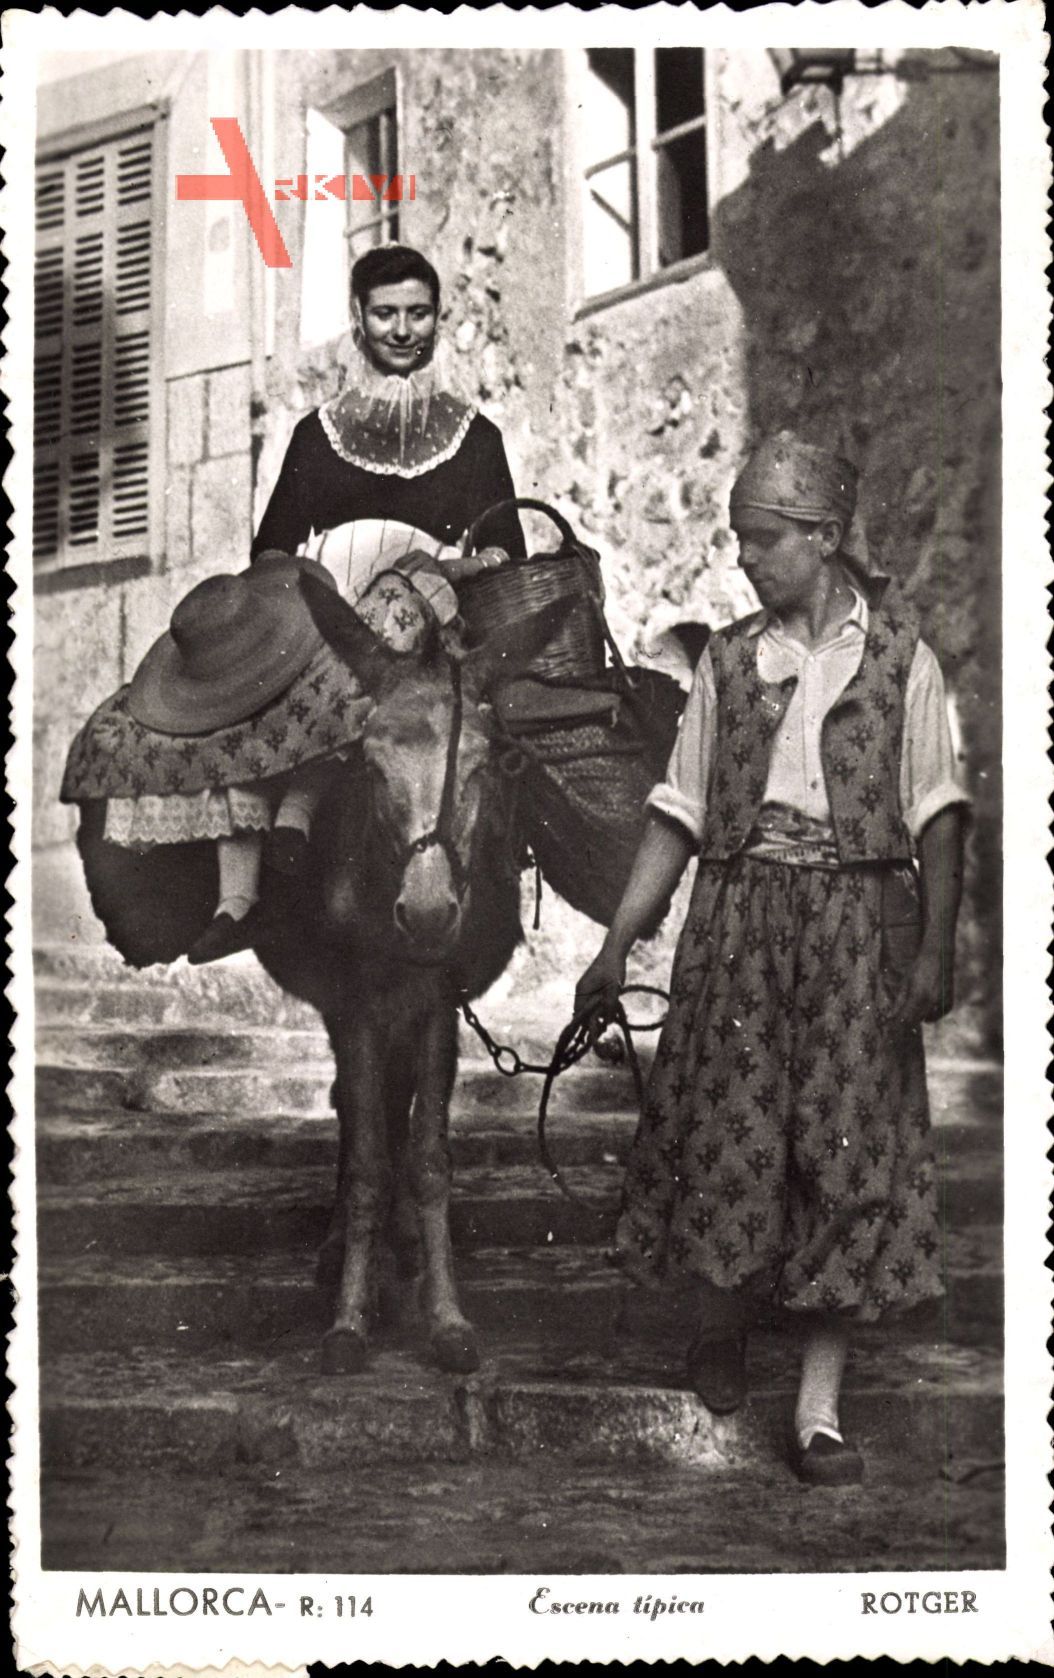 Mallorca, Frau in Tracht mit Korb auf Esel geführt von Mann